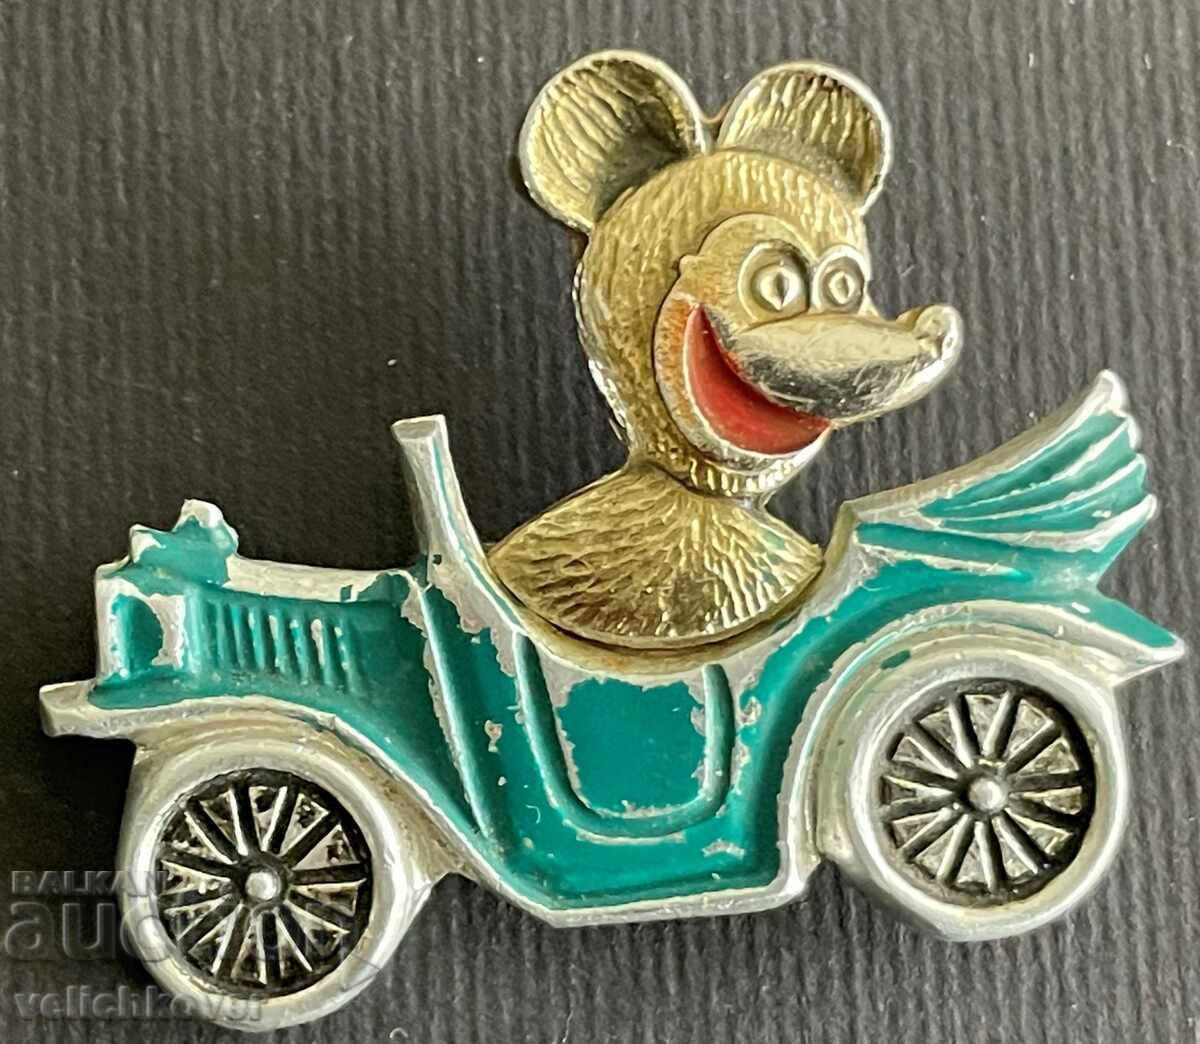 34681 USSR bear driving car cartoon character